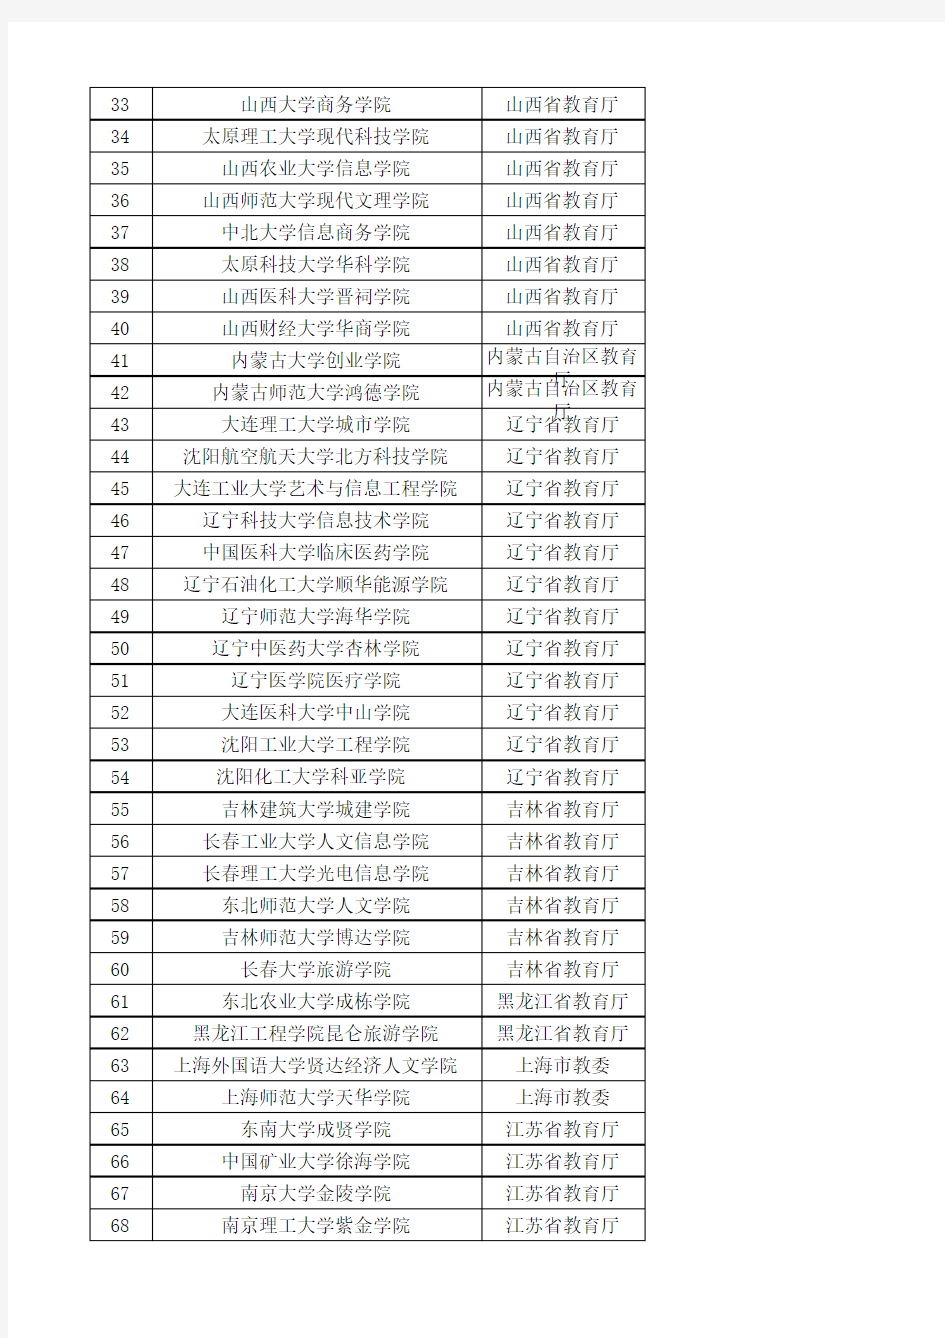 2014年独立学院名单(最新版)